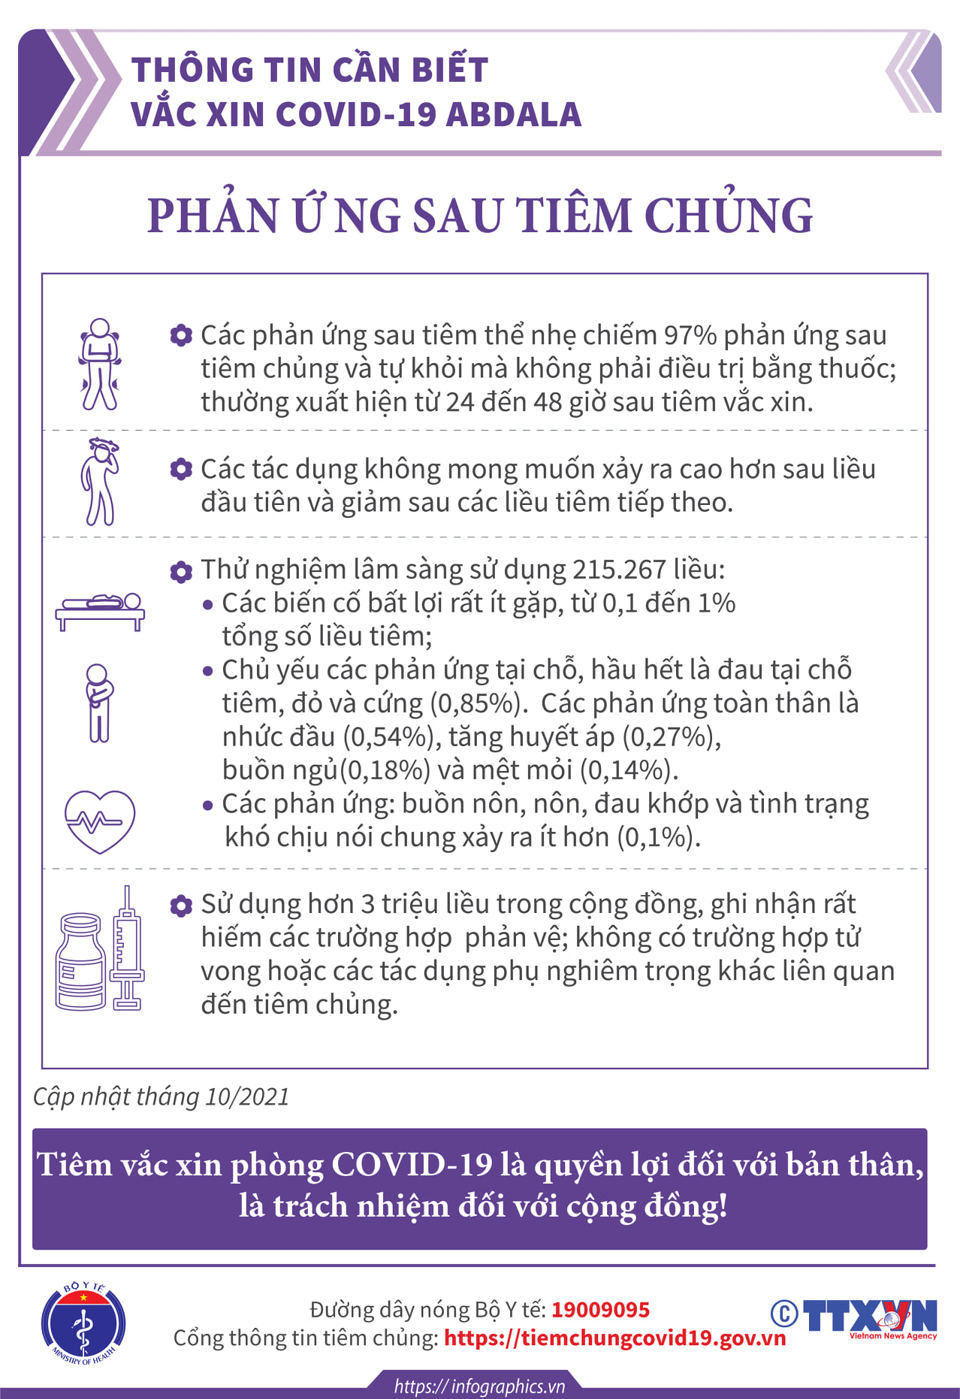 [Infographic] Thông tin cần biết về 3 loại vaccine  phòng Covid-19 - Ảnh 11